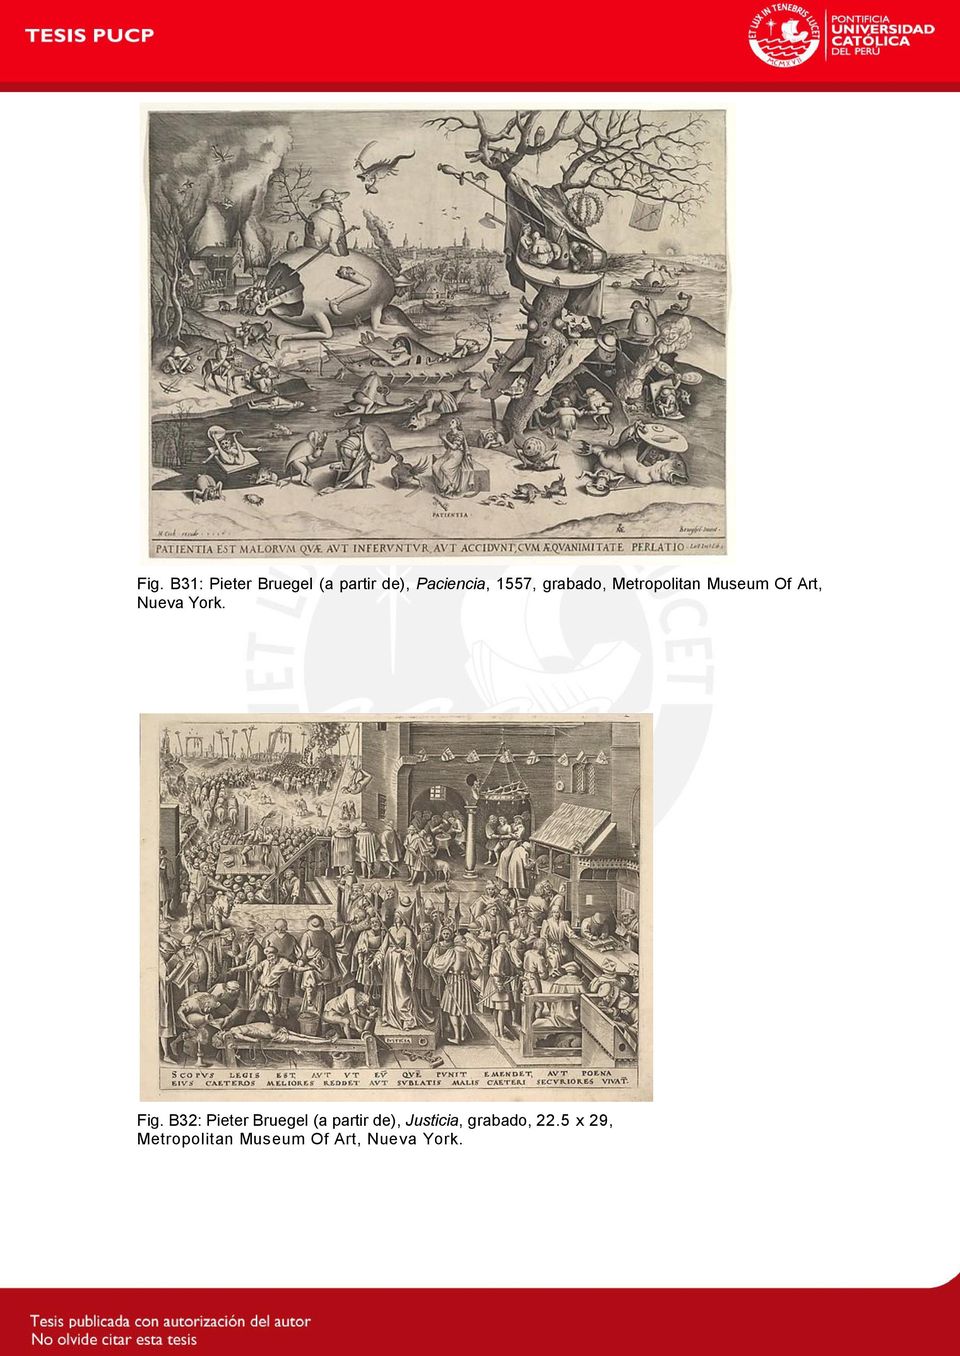 Fig. B32: Pieter Bruegel (a partir de), Justicia,